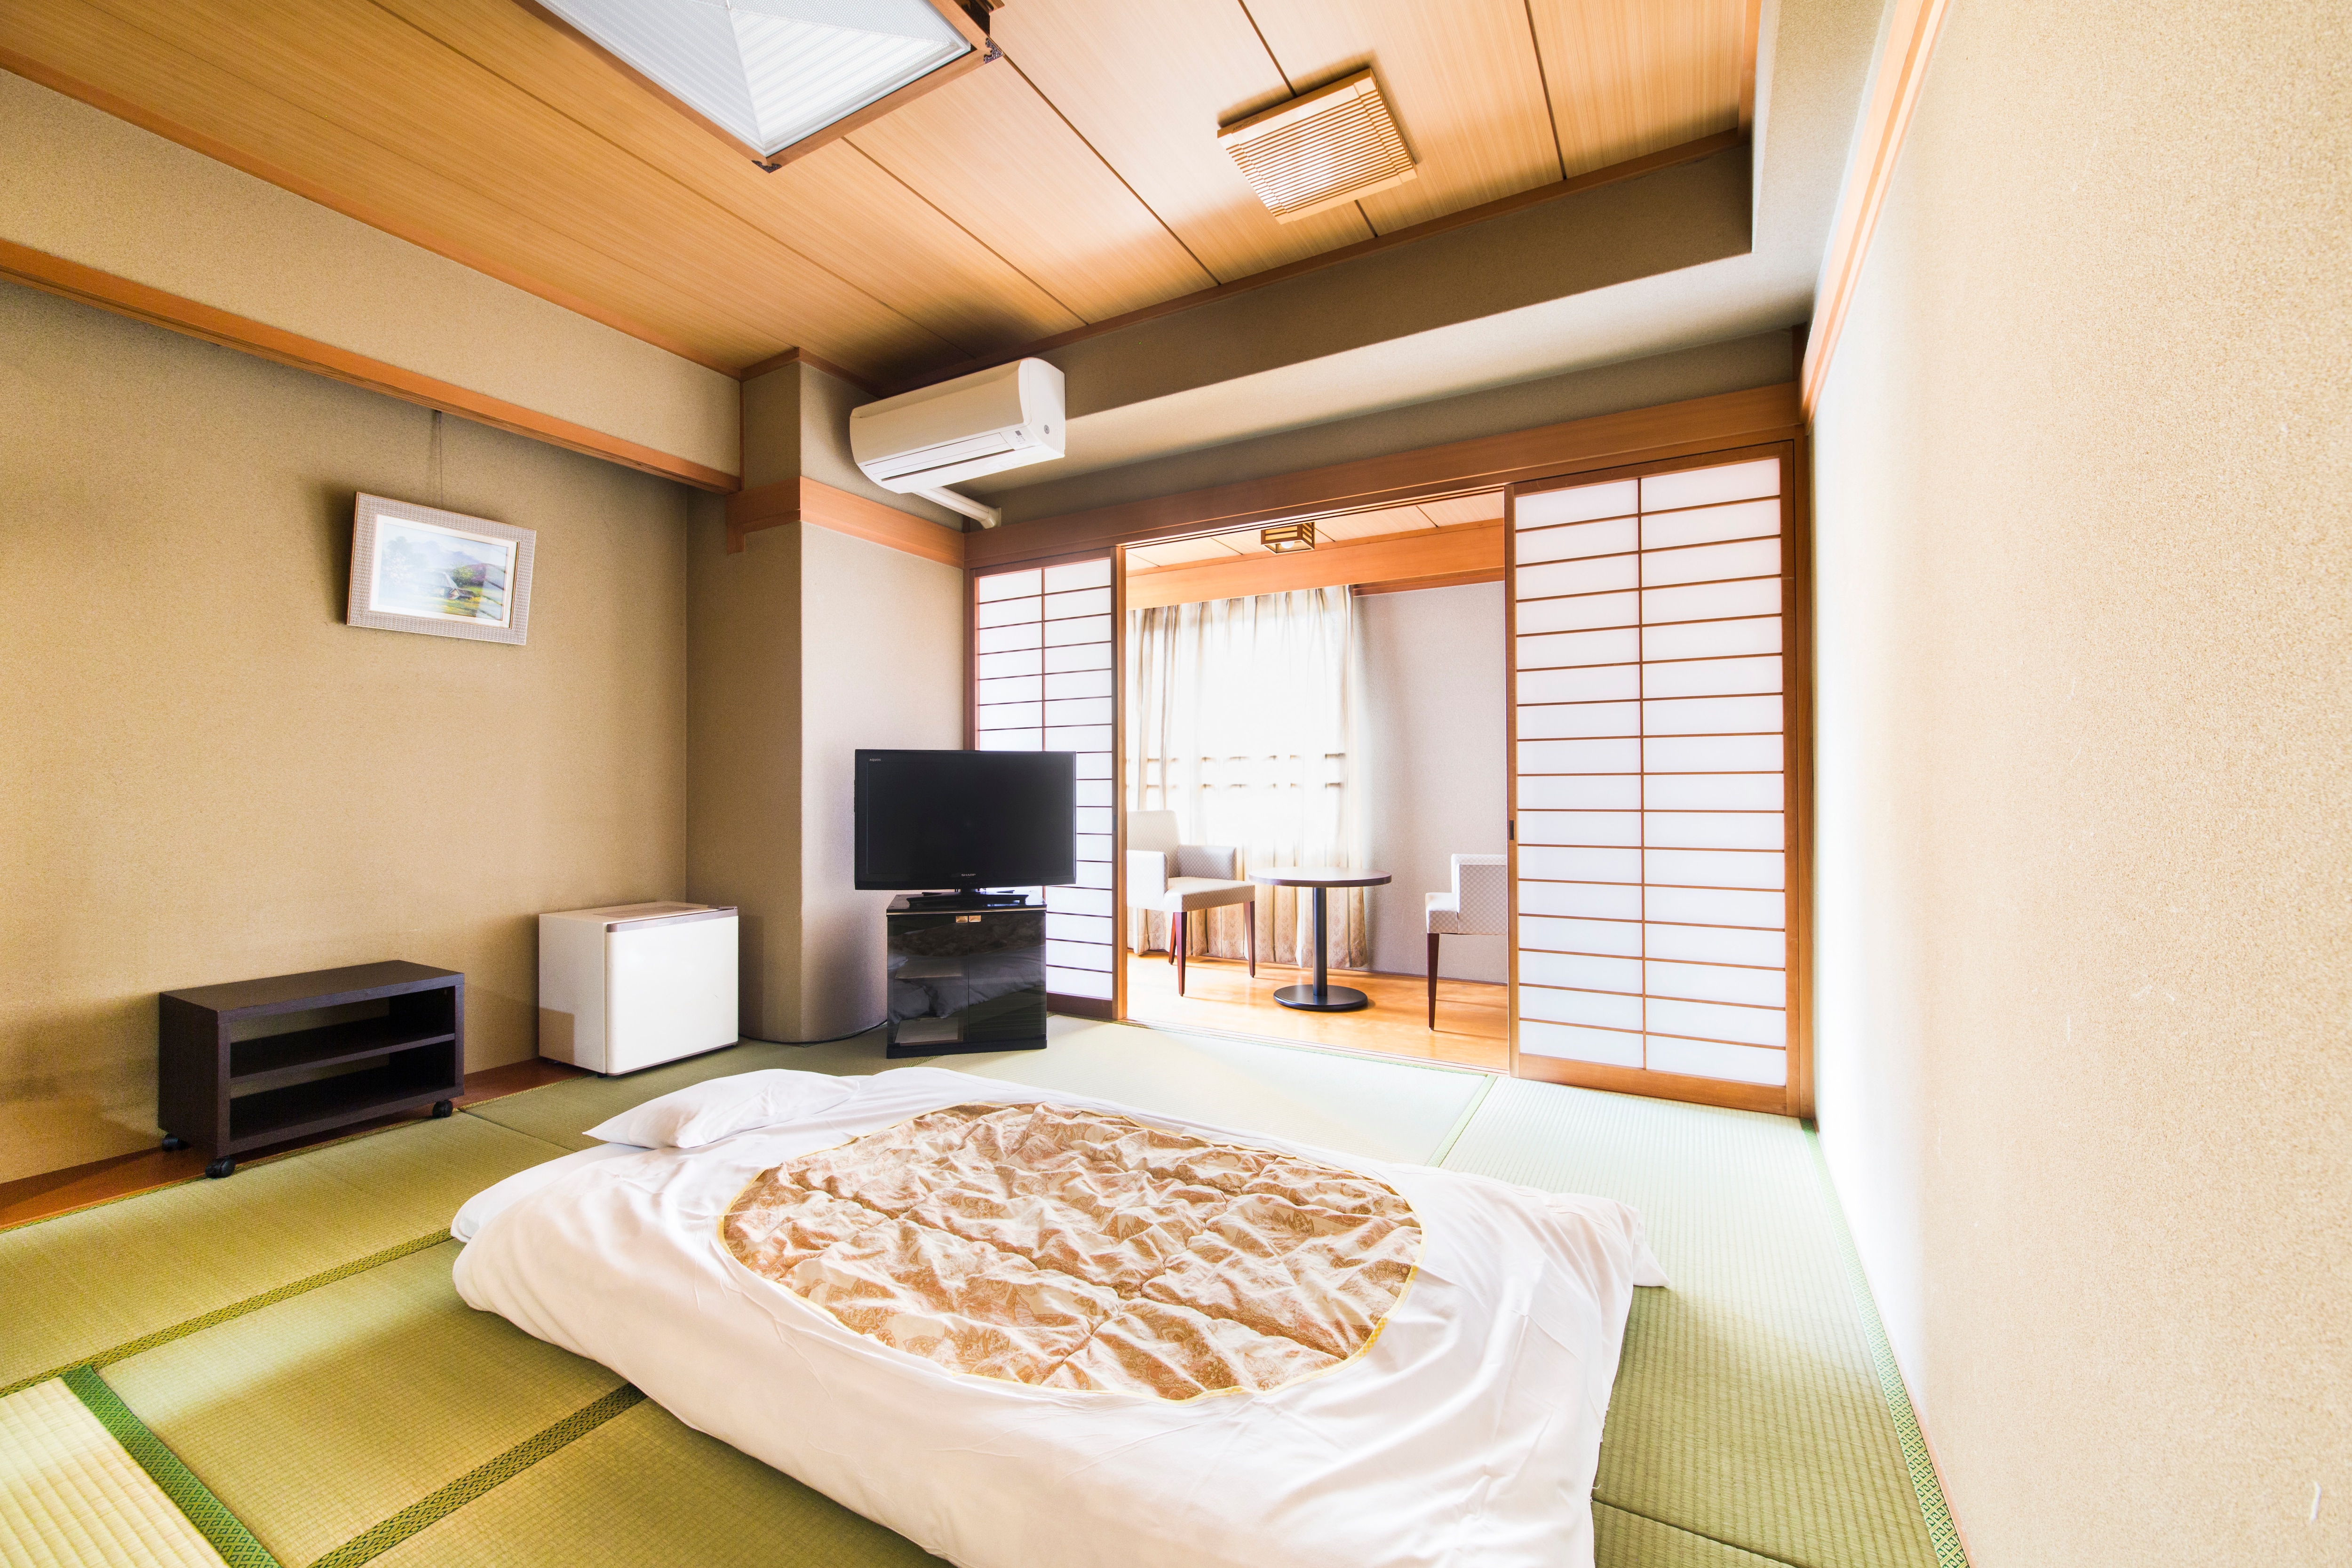 Kamar bergaya Jepang 8 tikar tatami dapat menampung 2 hingga 3 orang